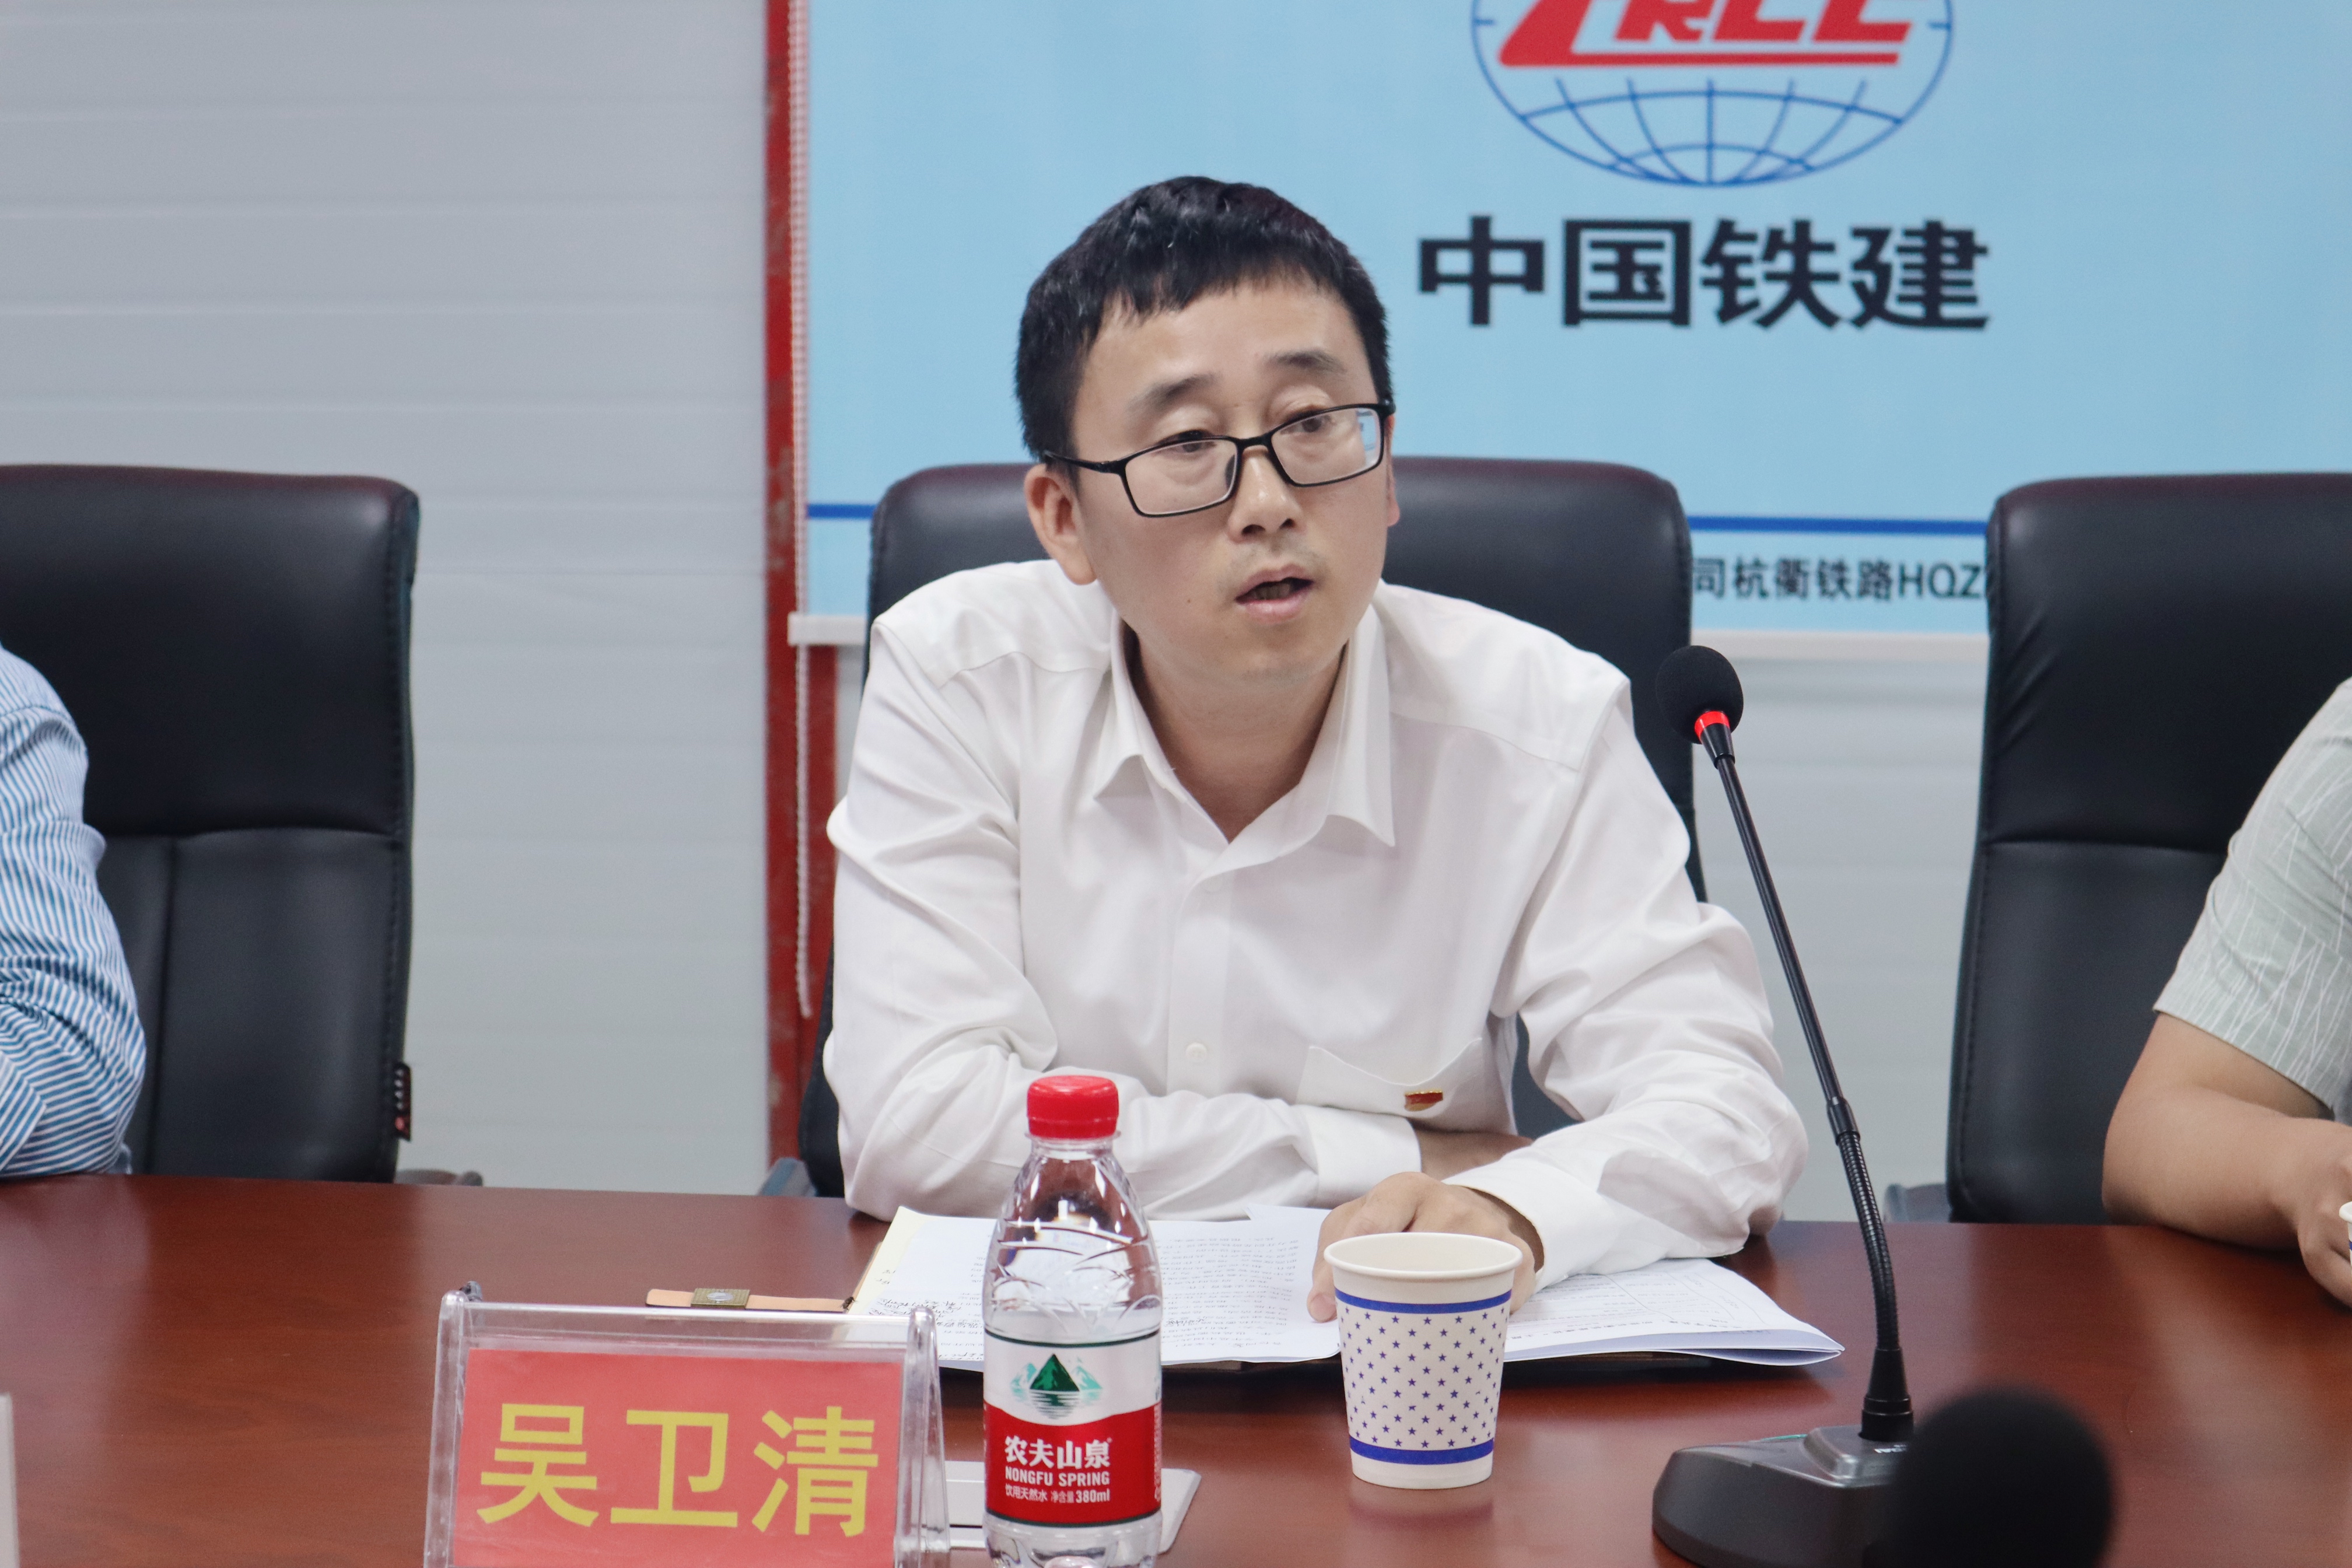 龙游县铁路轨道交通建设管理中心党组成员、副主任吴卫清发言